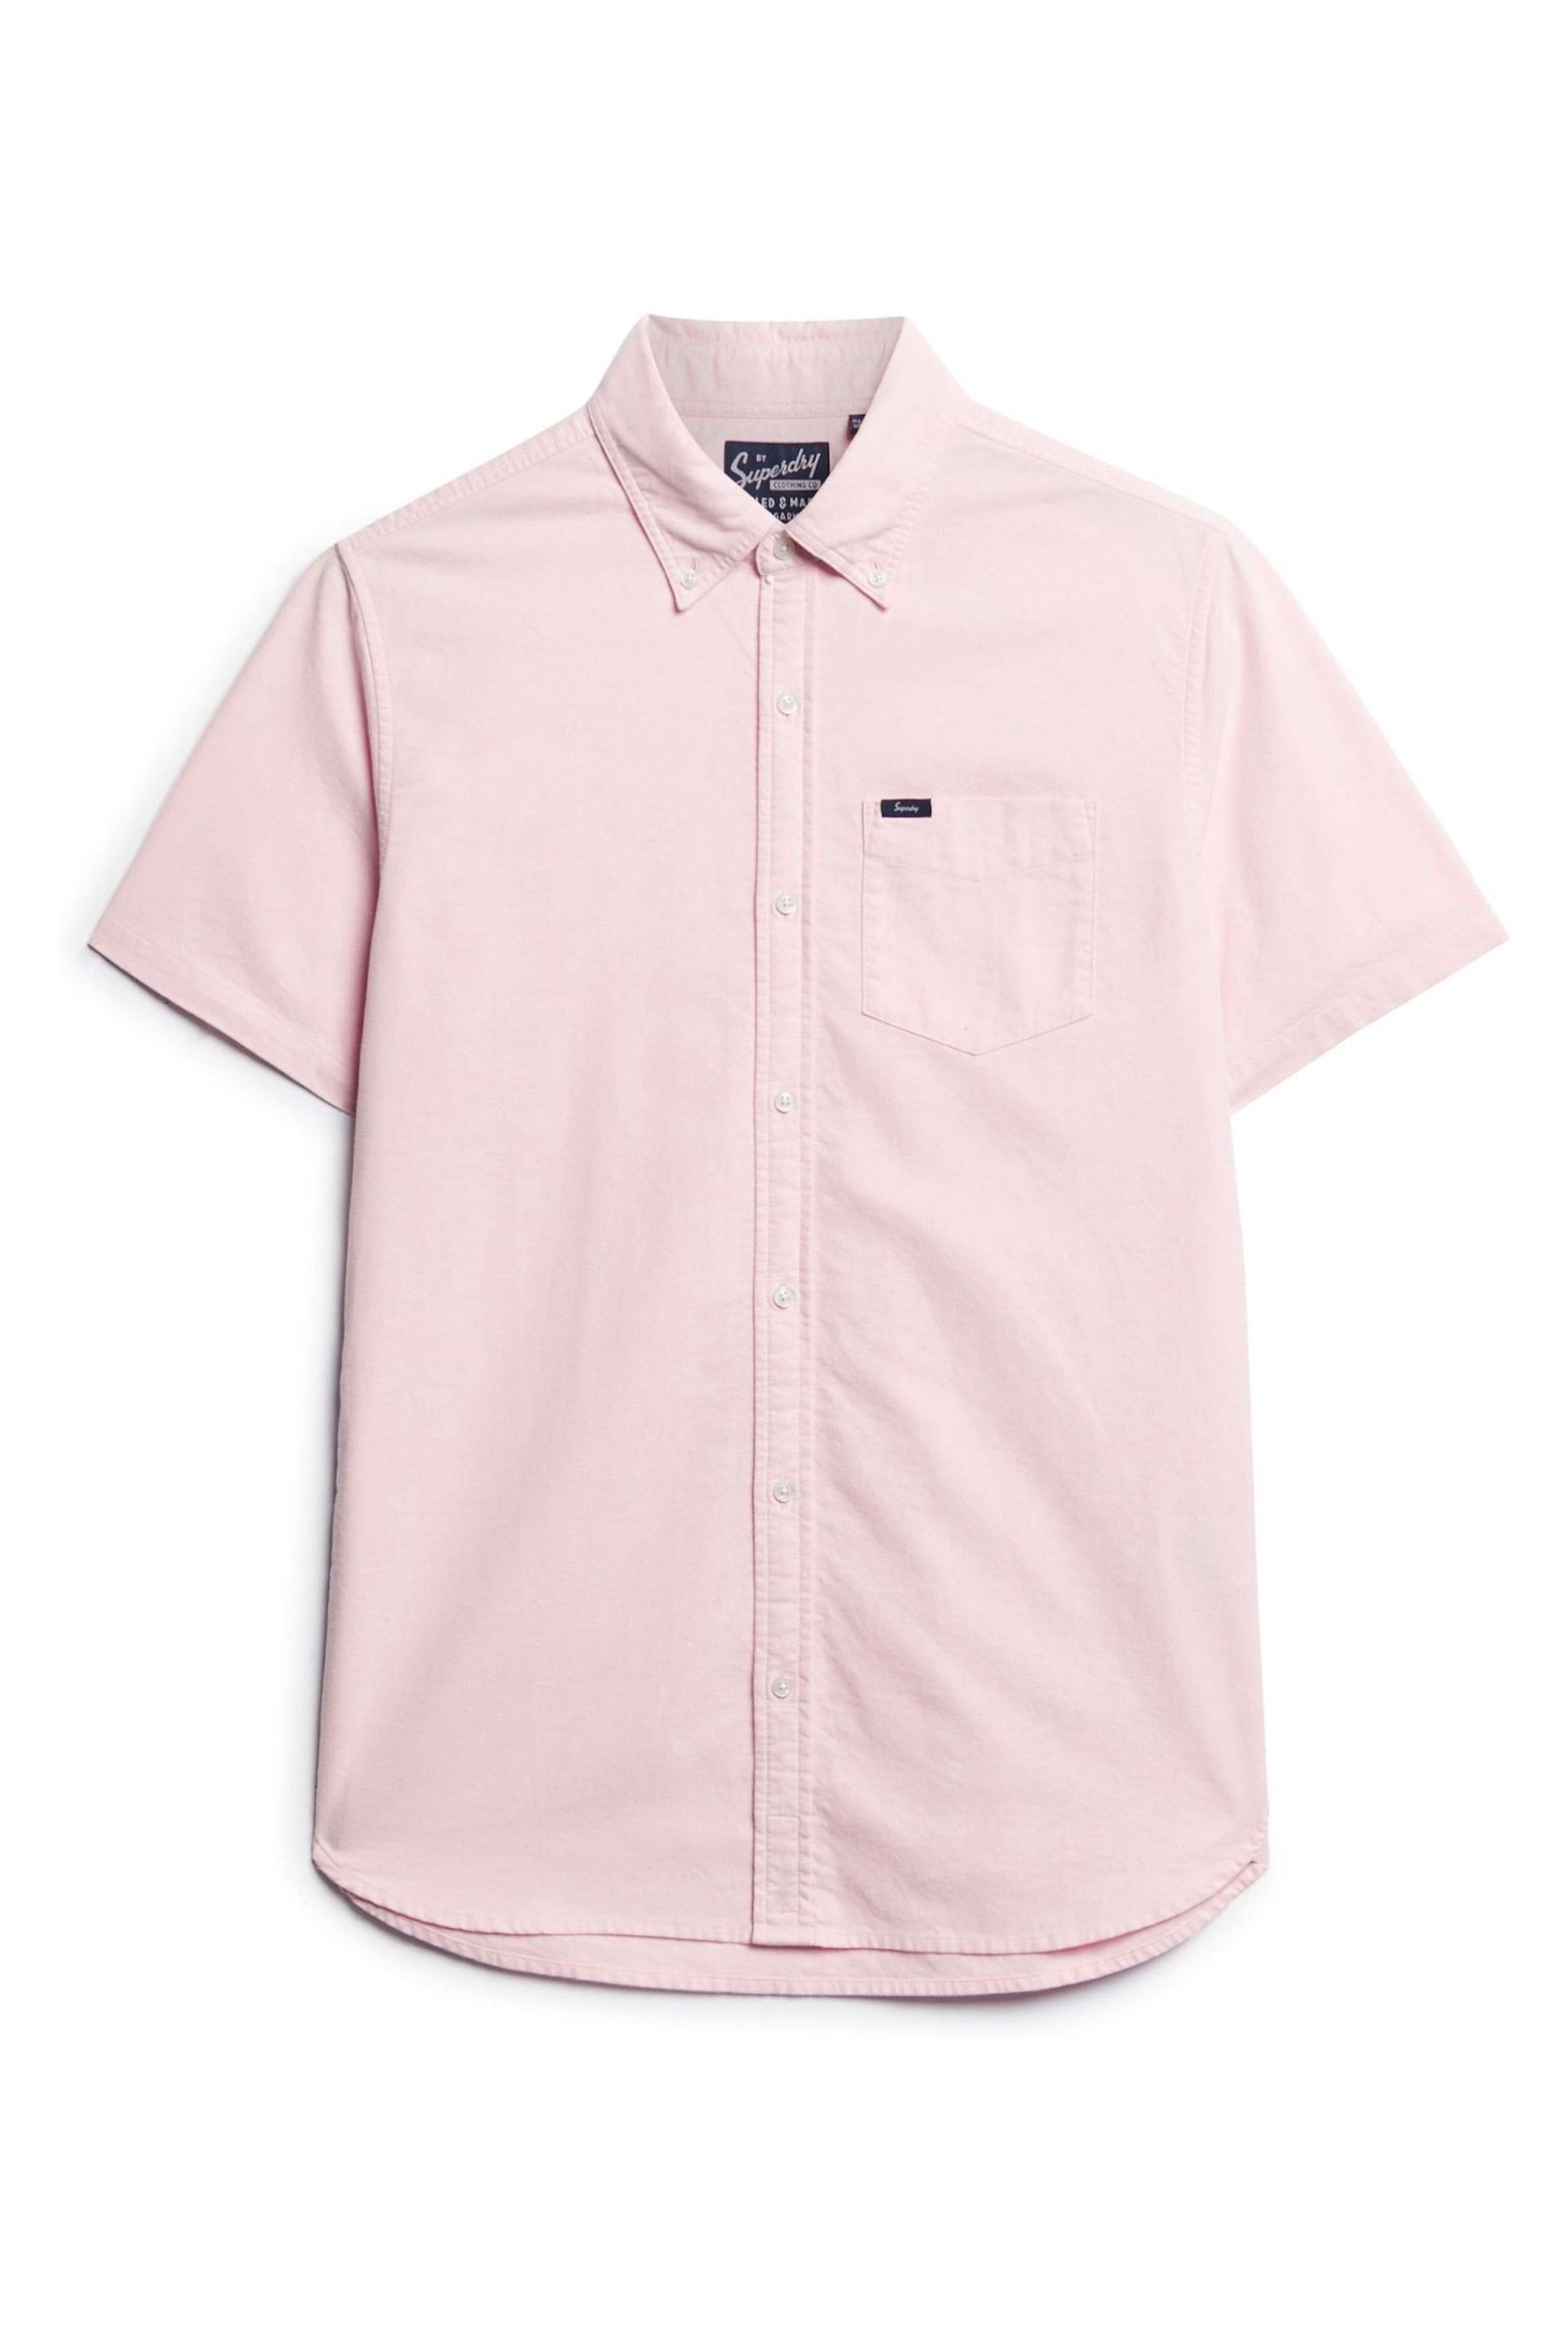 Superdry Pink Vintage Oxford Short Sleeve Shirt - Image 6 of 8